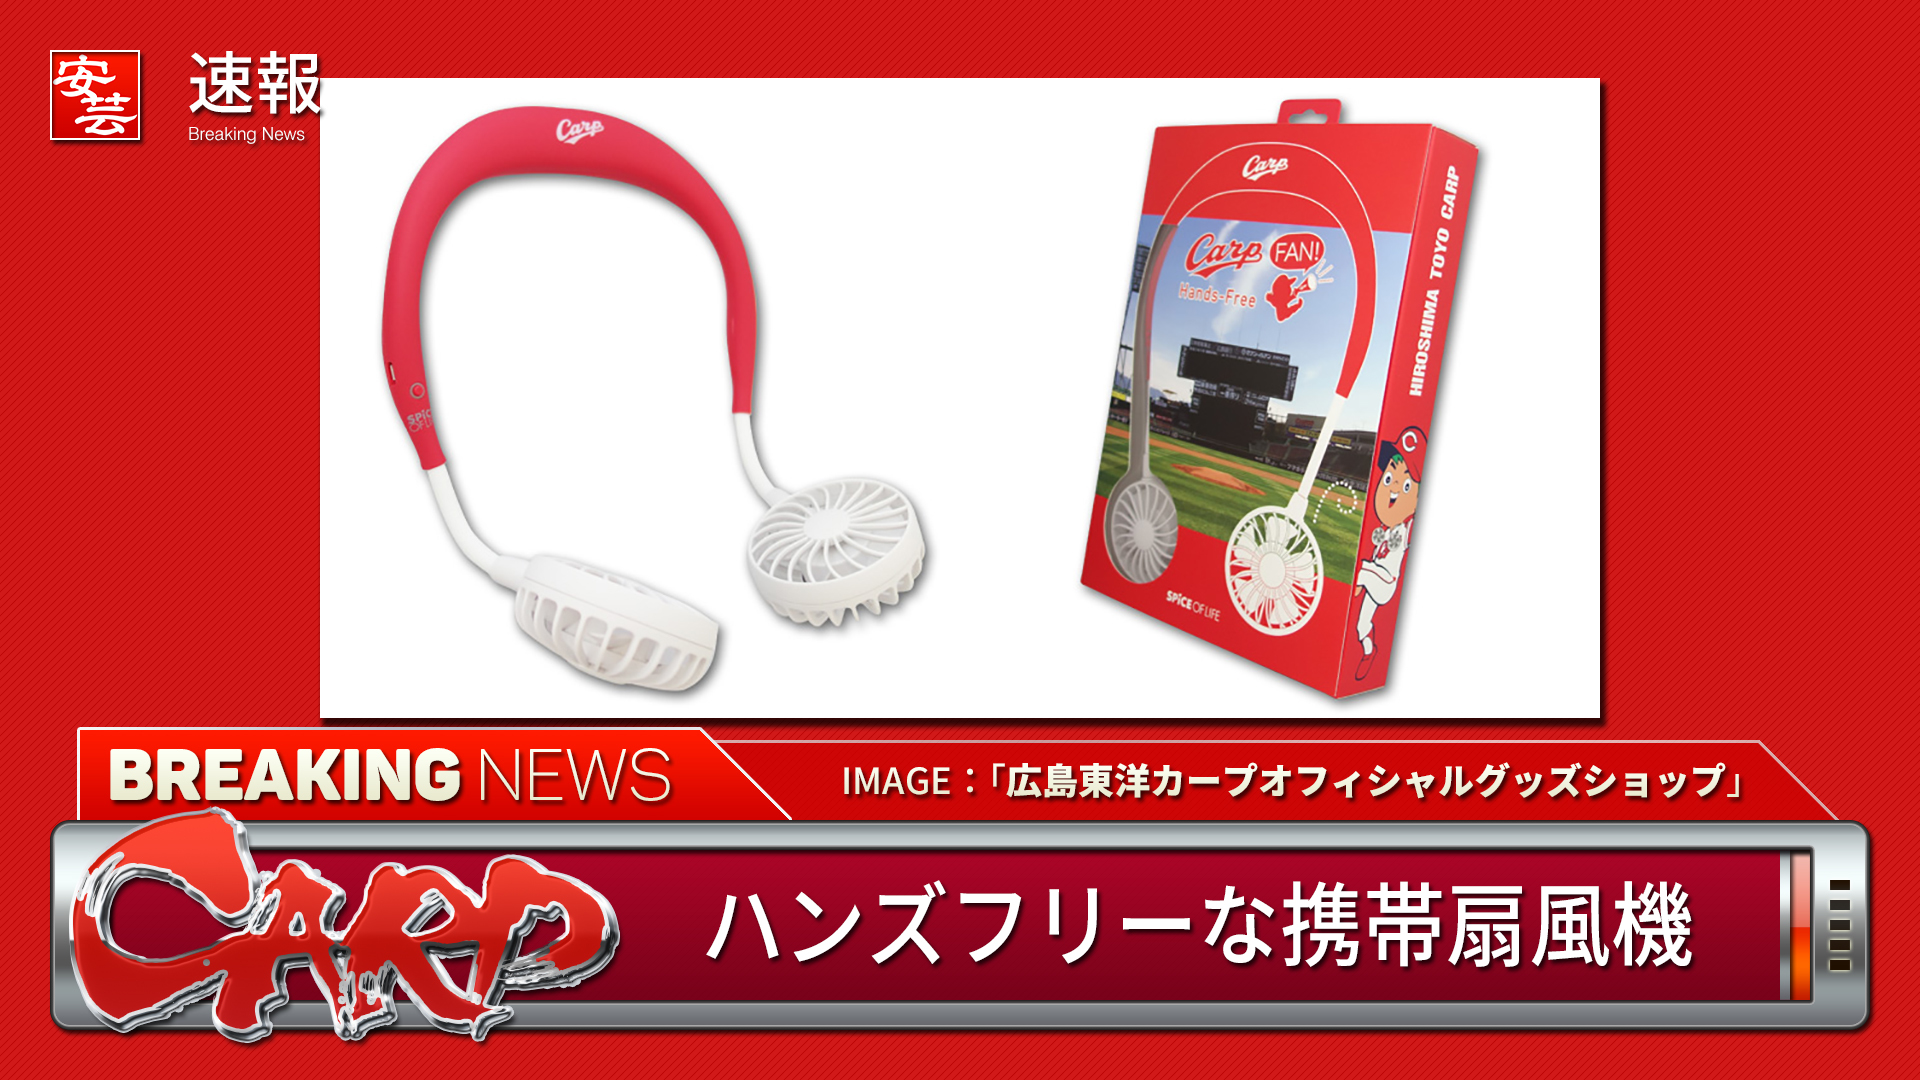 首にかけるハンズフリーな携帯扇風機 カープfan が発売 安芸の者がゆく 広島東洋カープ応援ブログ